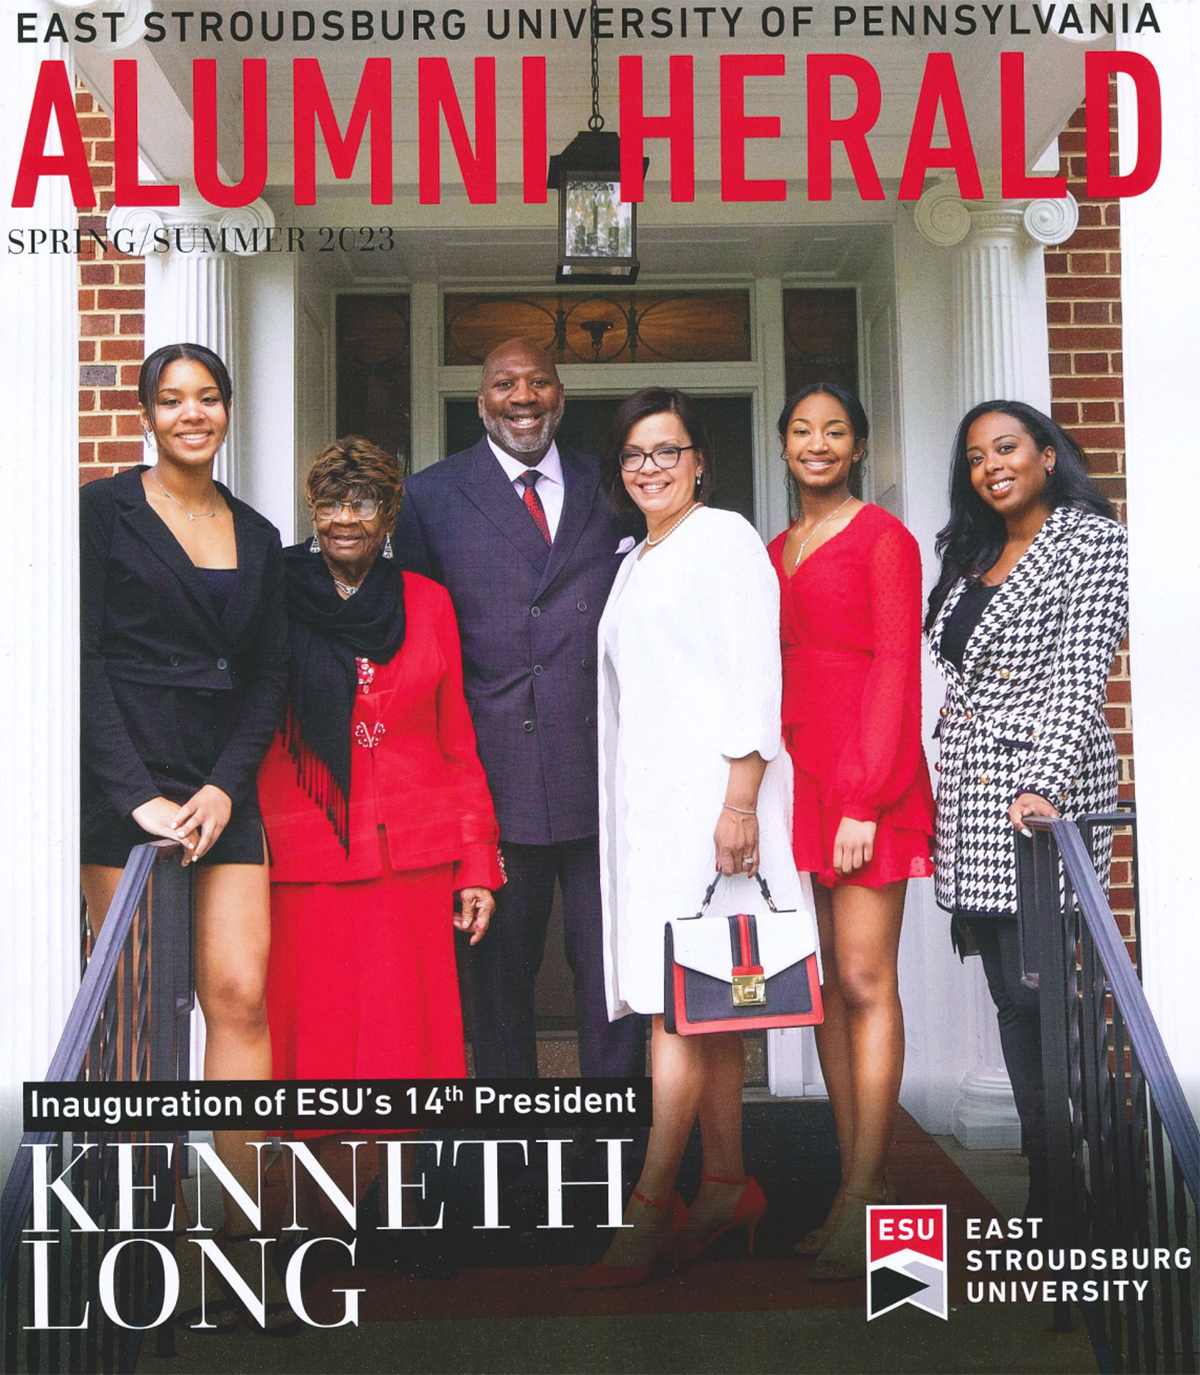 Alumni Herald